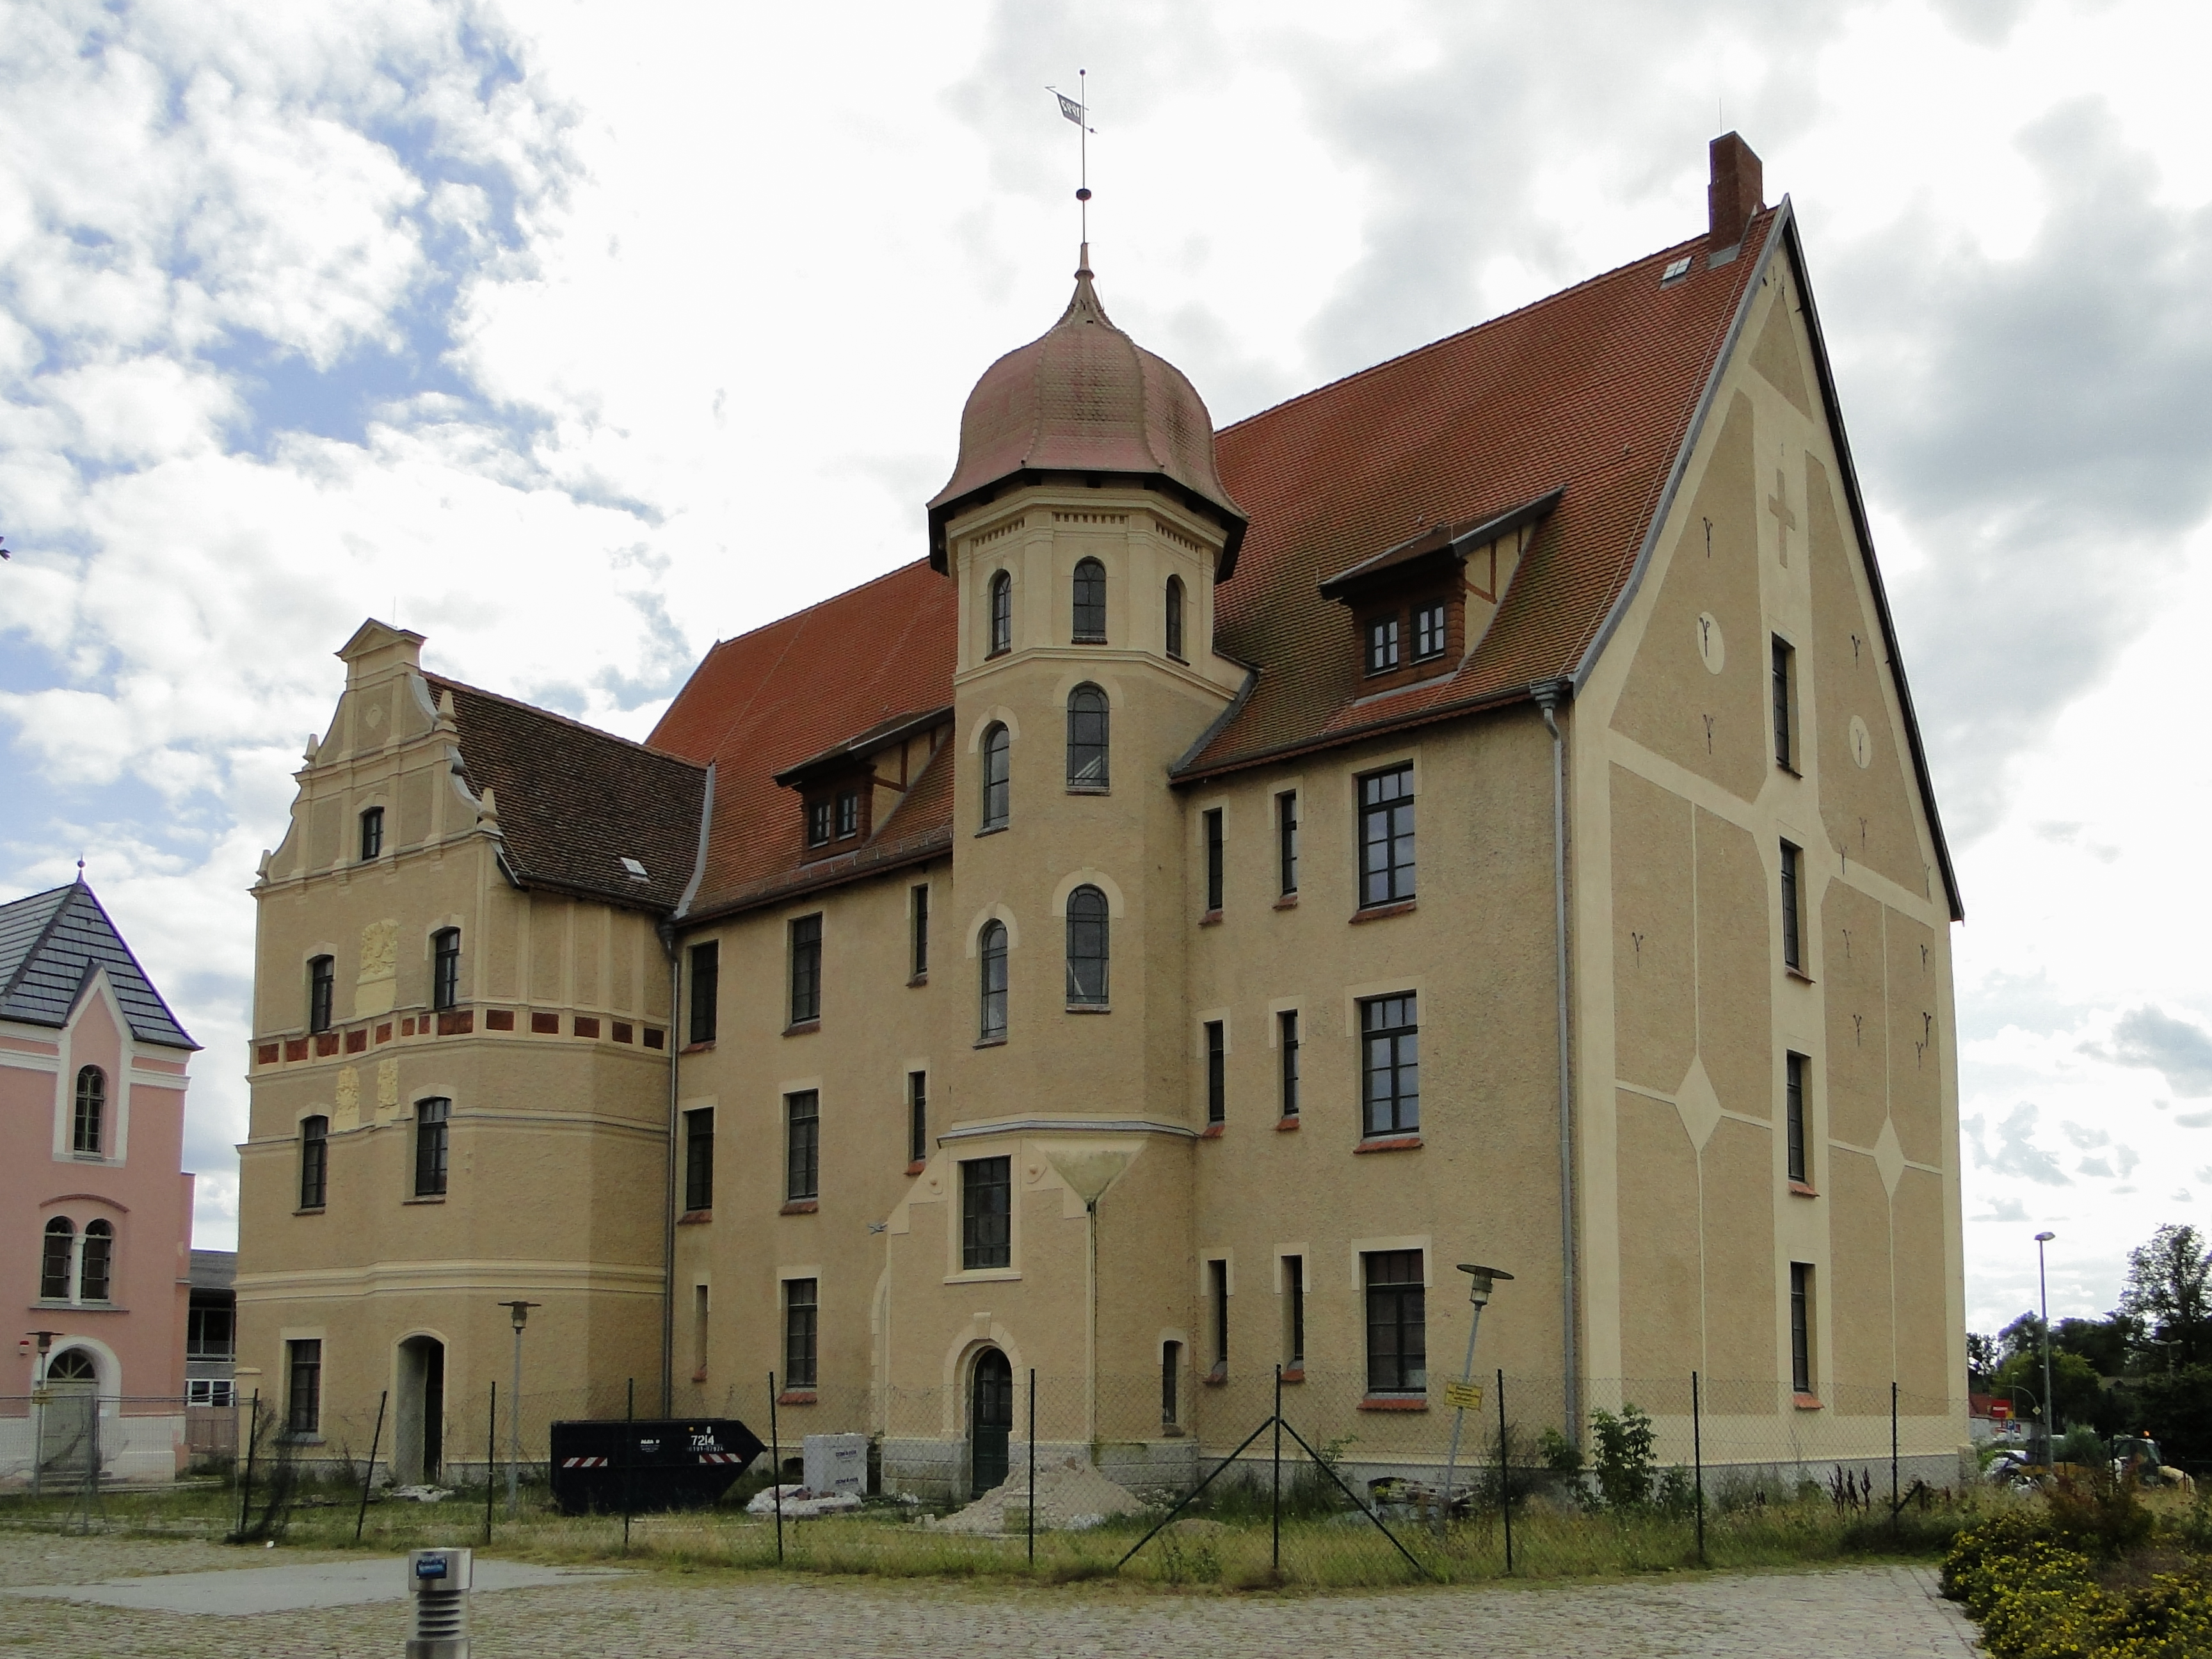 Le château de Bützow : Histoire d'une renaissance